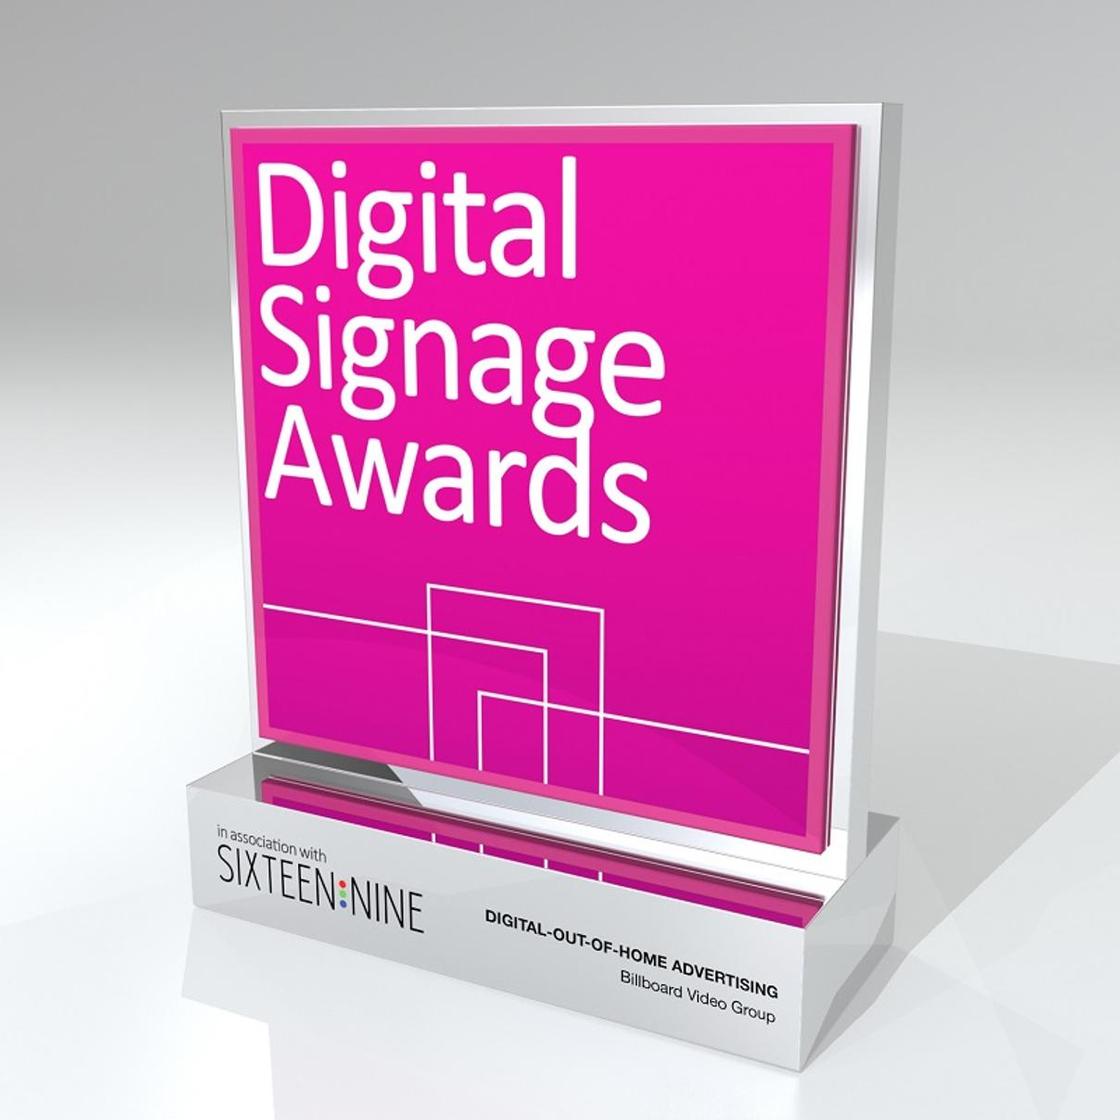 Казахстан занял 1-е место на международном конкурсе Digital Signage Awards в Амстердаме